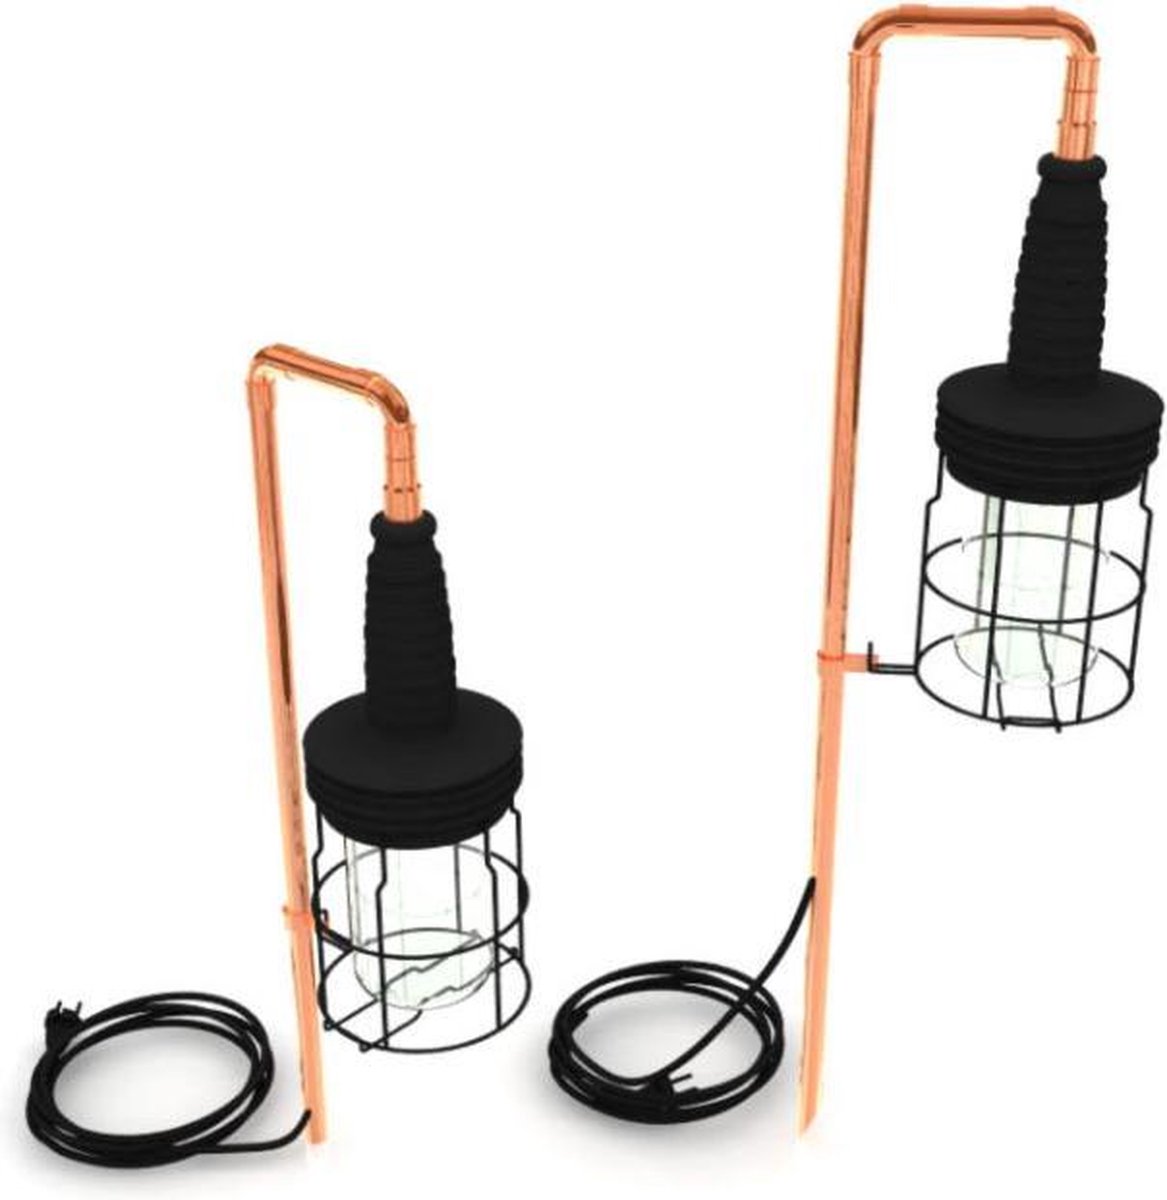 Koperen buitenlamp met grondspie | tuinlamp